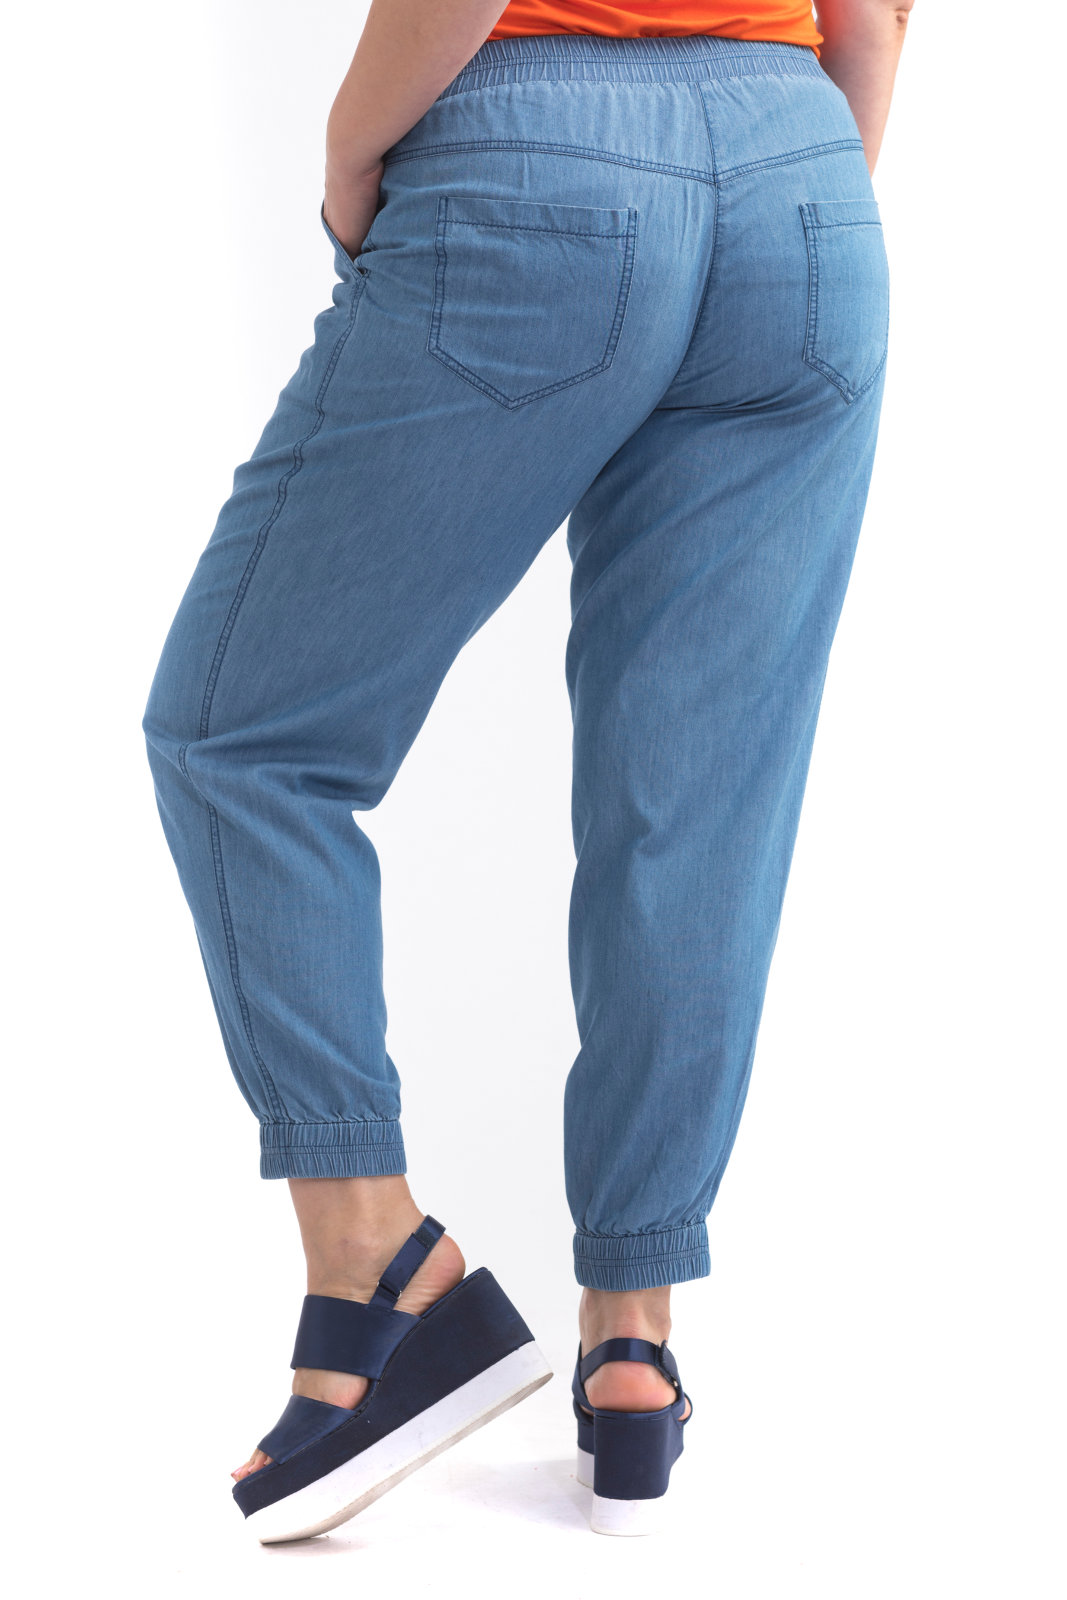 Валберис купить джинсы большого размера. Летние джинсы для полных женщин. Джинсы на резинке для полных женщин. Большие джинсы женские. Джинсы на резинке женские больших размеров.